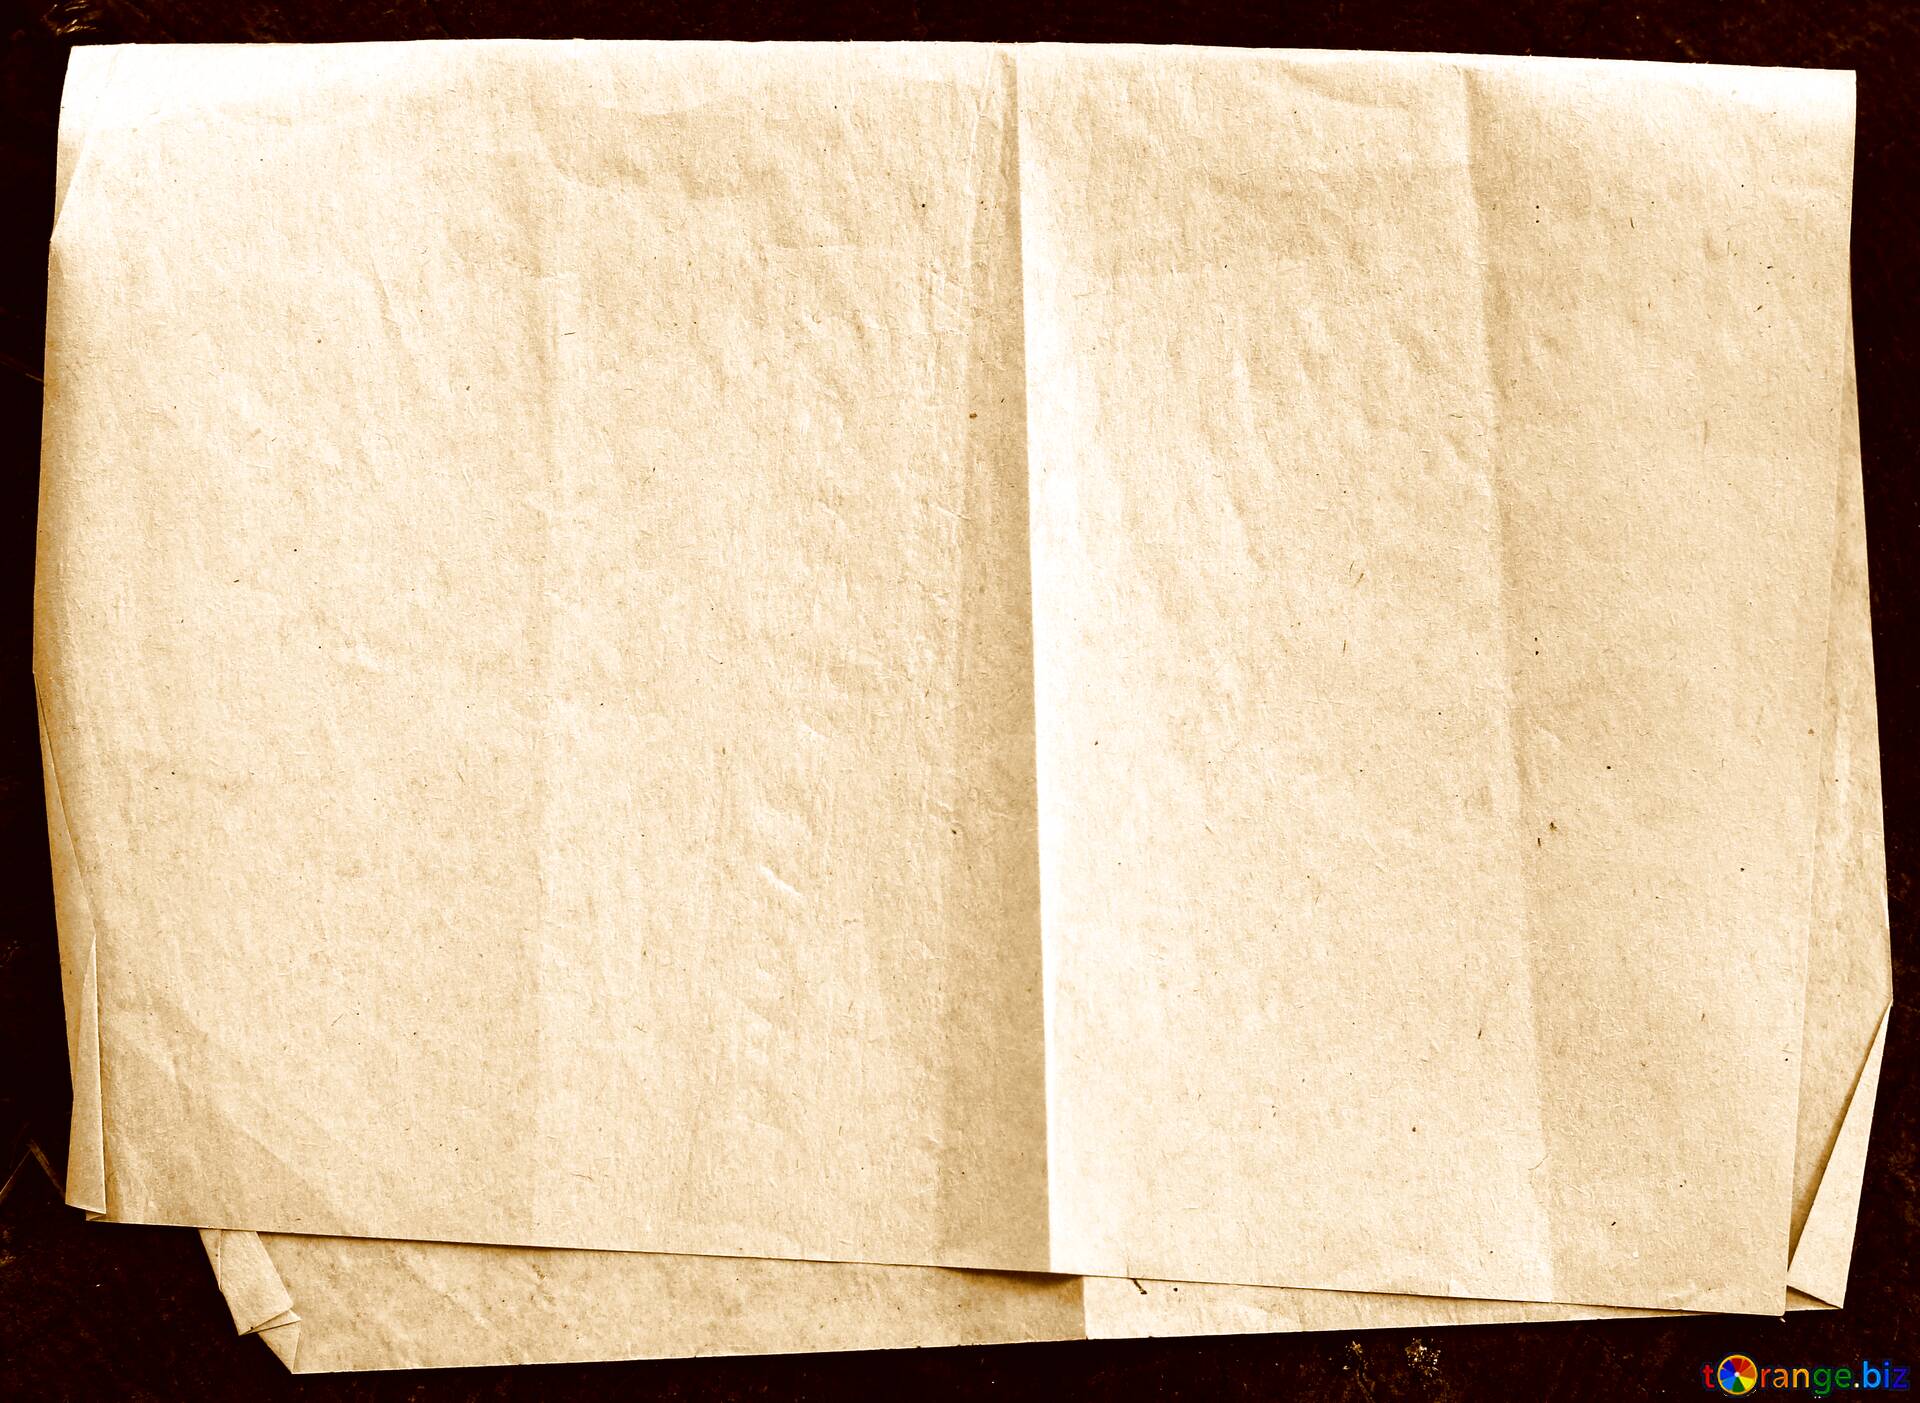 Стучащая бумага. Сложенная бумага. Текстурная бумага. Старая бумага. Текстурная бумага сложенная.